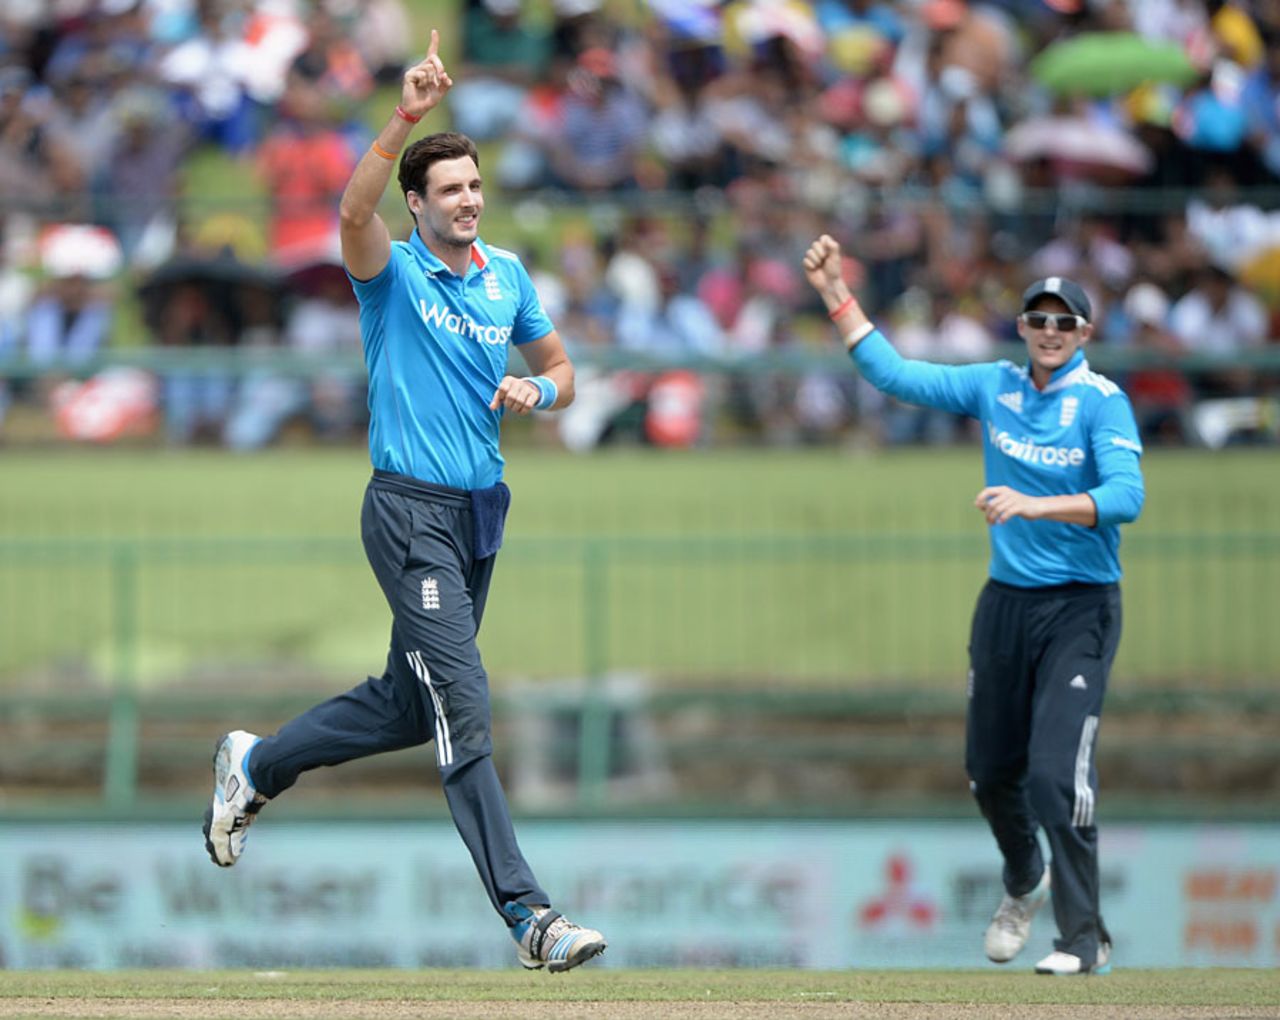 Steven Finn made a couple of inroads for England, Sri Lanka v England, 6th ODI, Pallekele, December 13, 2014